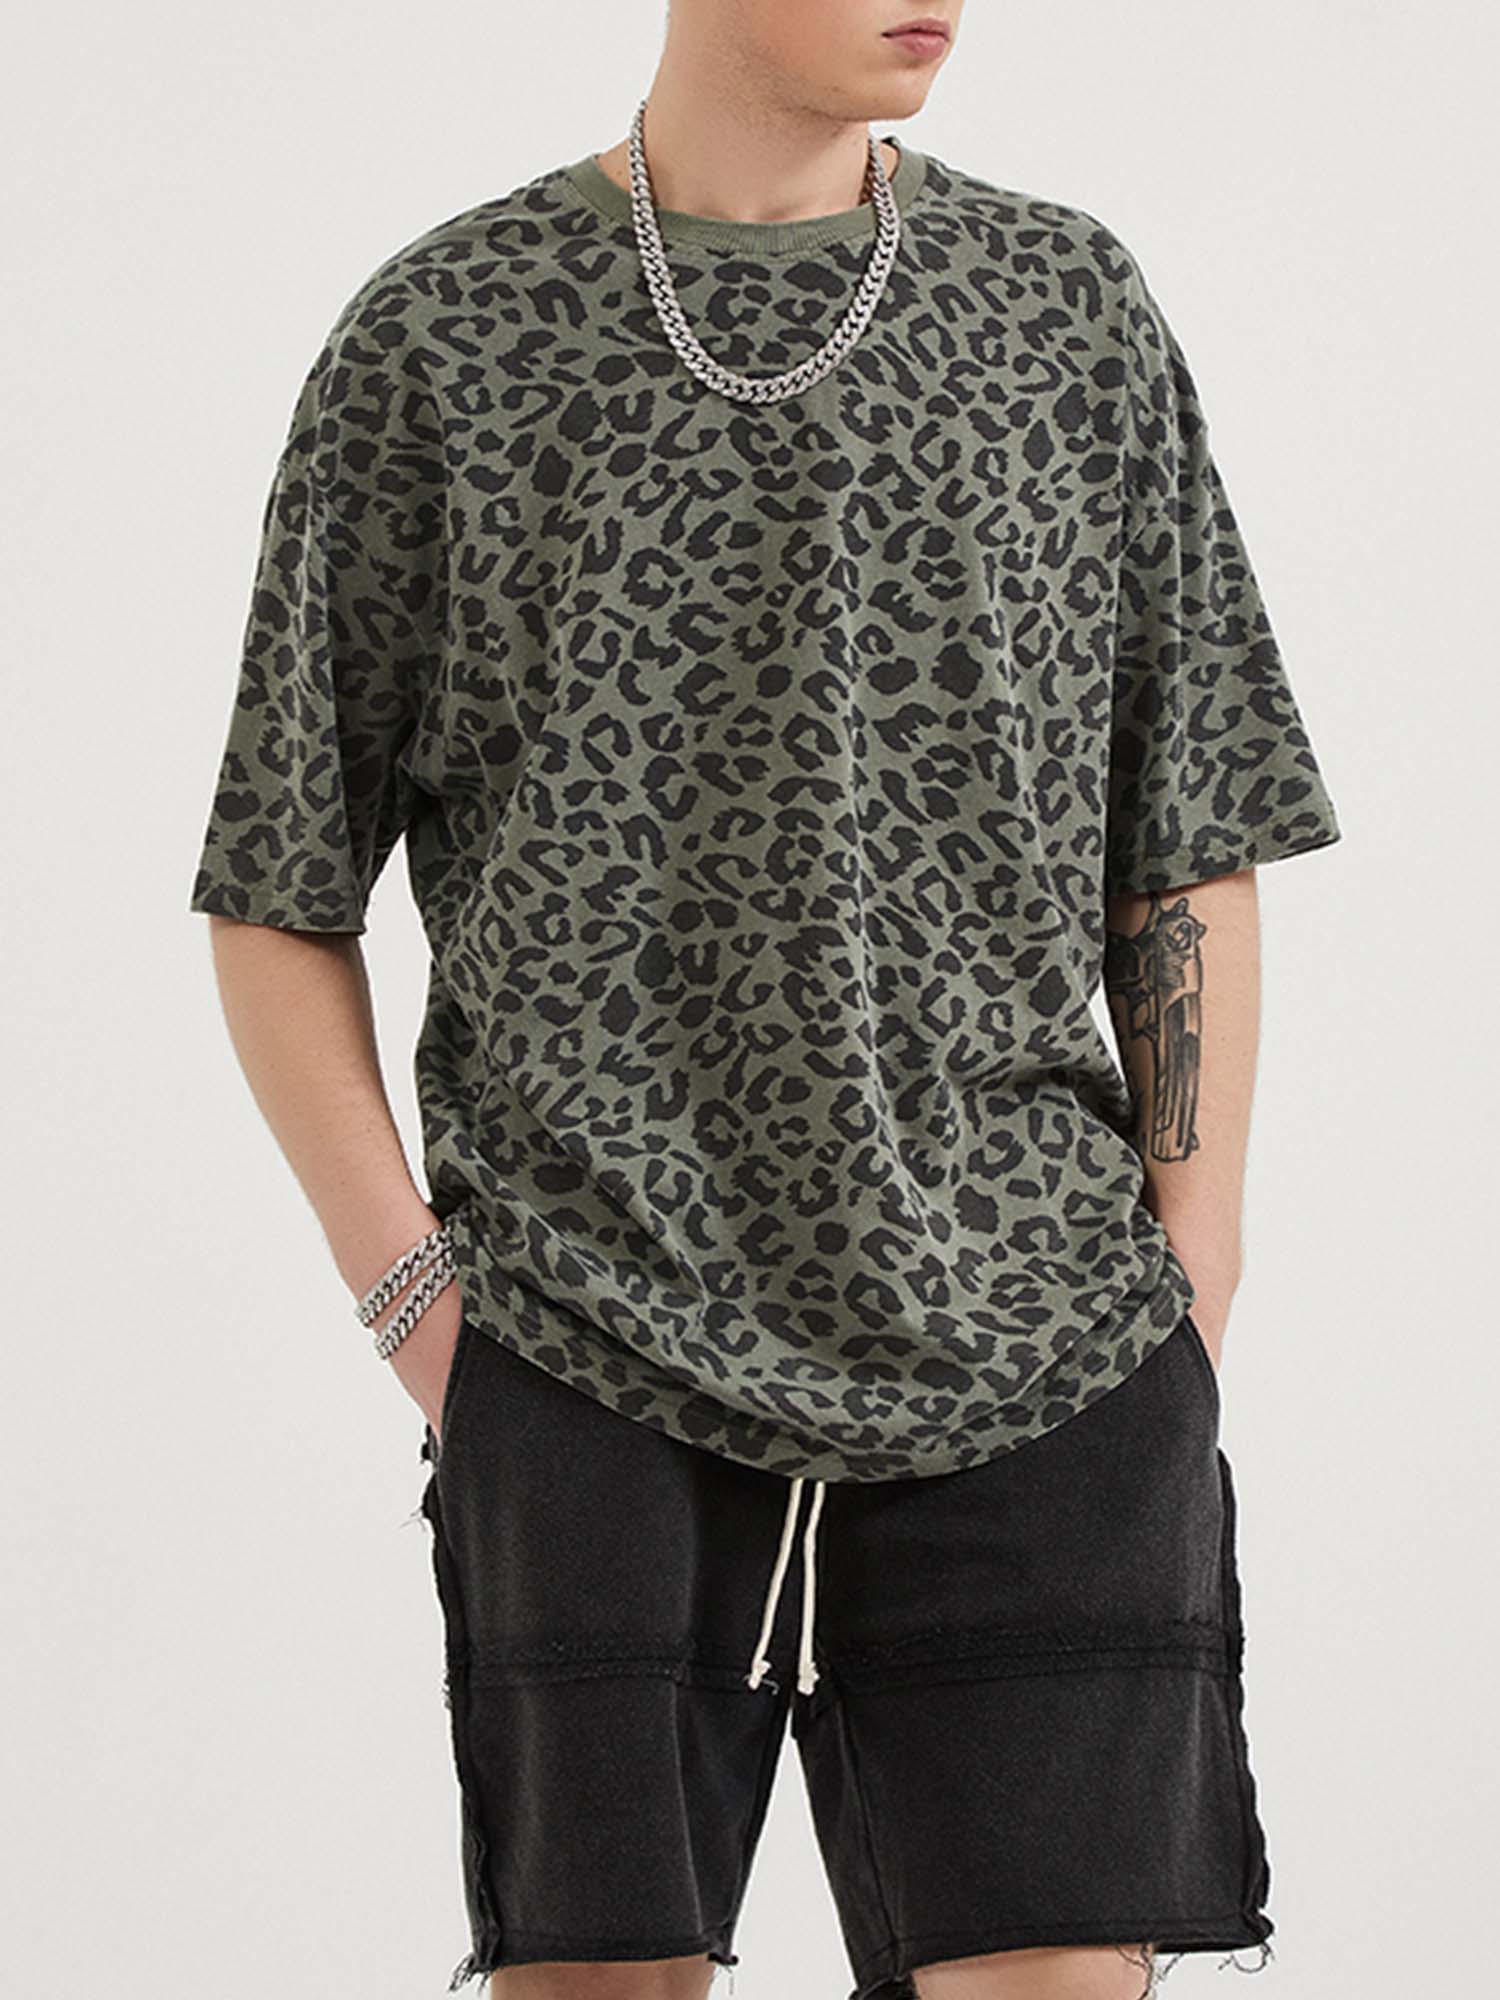 JUSTNOTAG Grünes Kurzarm-T-Shirt aus 100 % Baumwolle mit Leopardenmuster